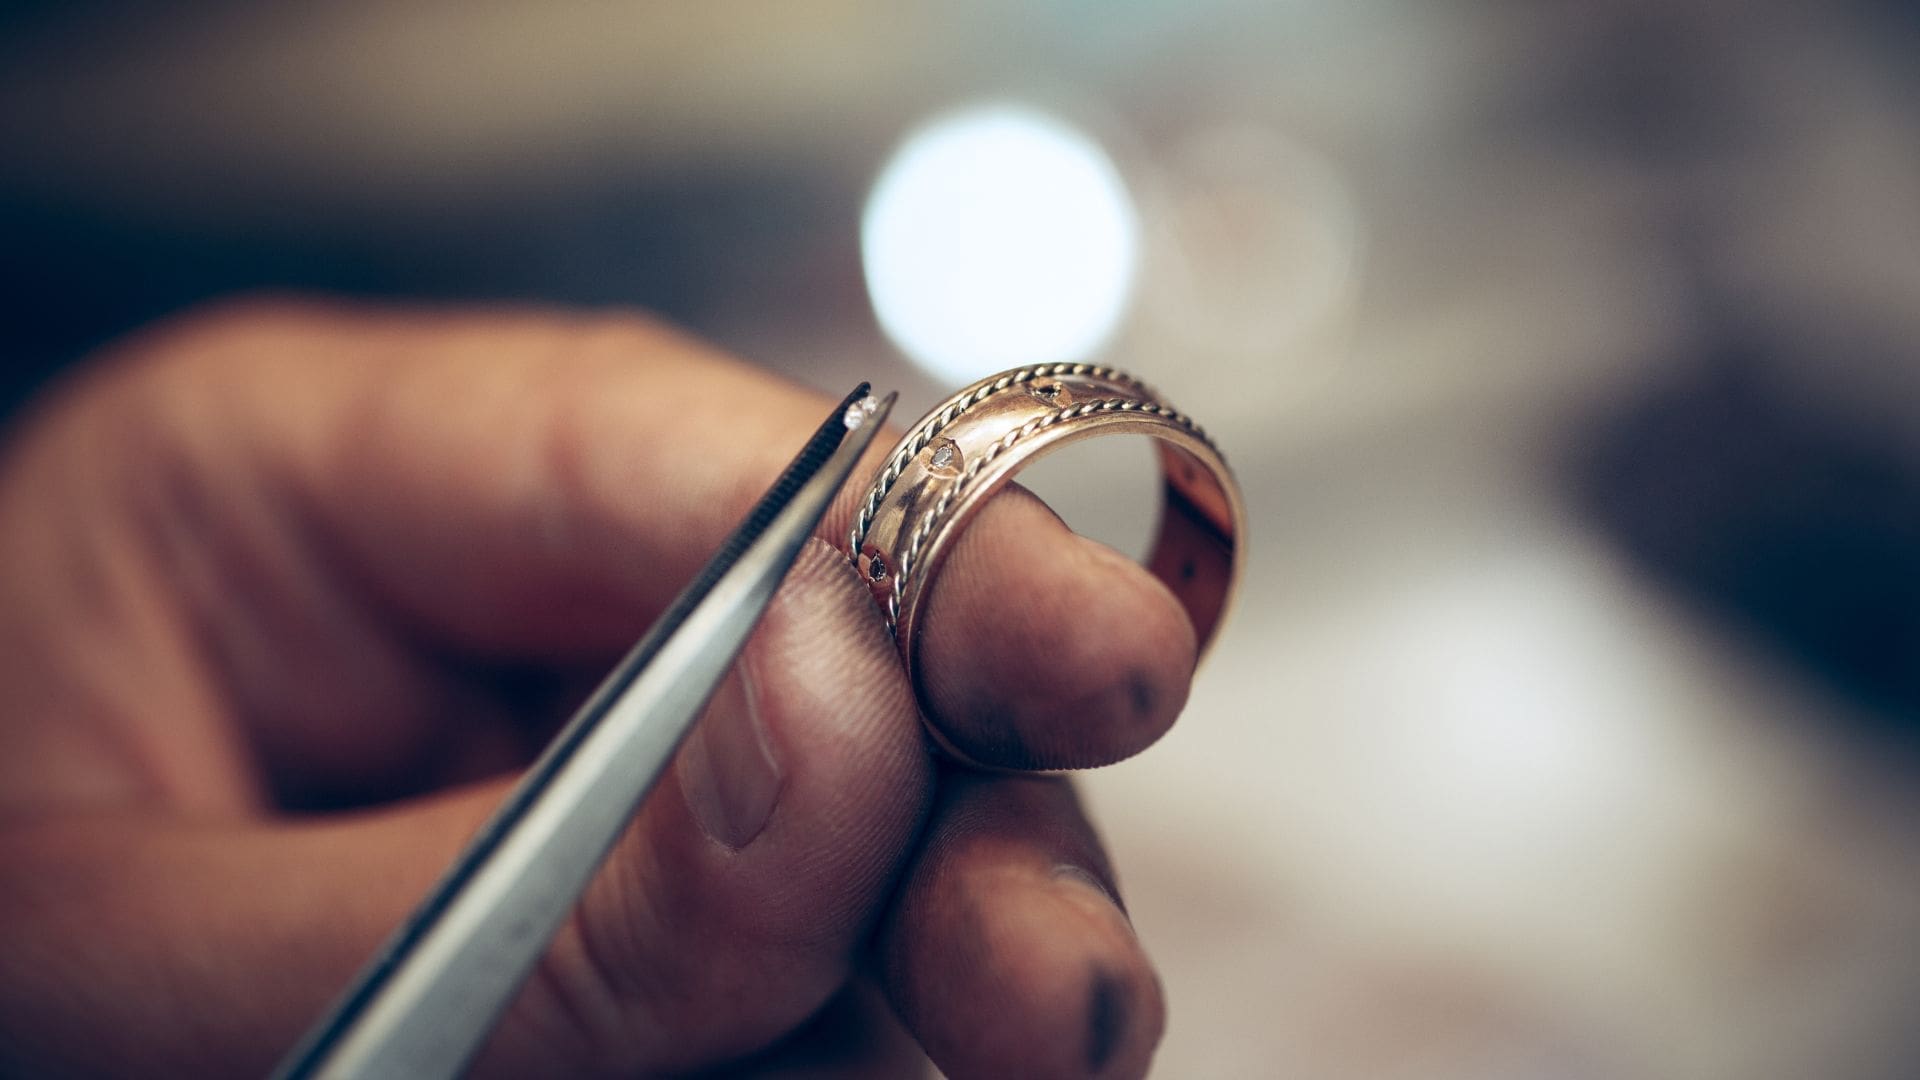 Custom Designed Engagement Rings vs. Mass Produced Rings